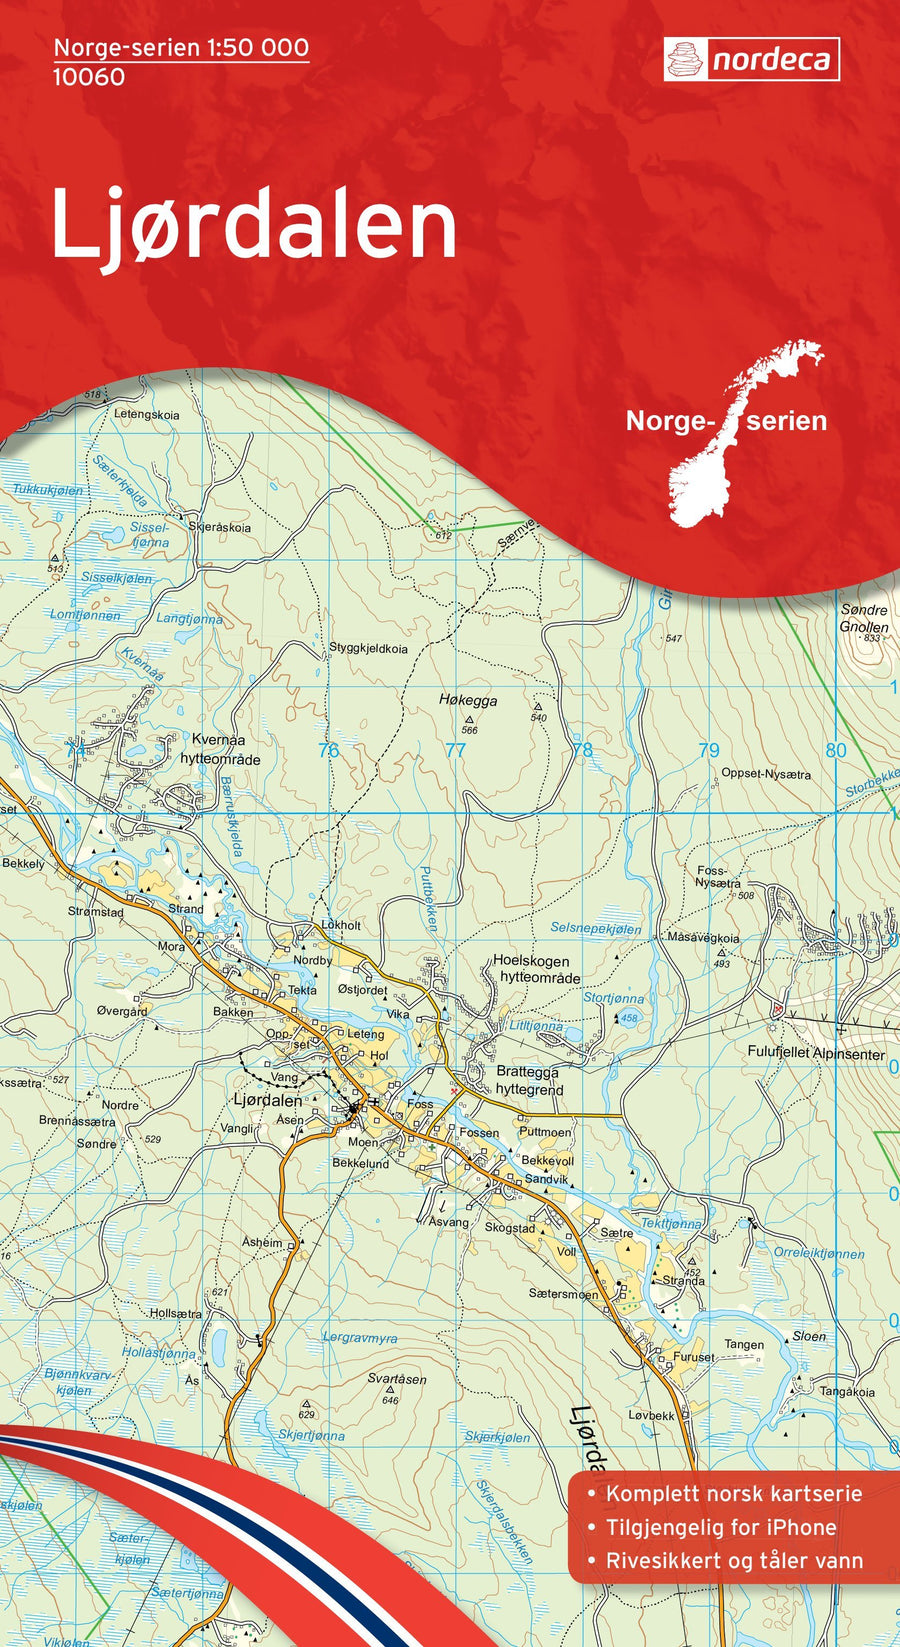 Carte de randonnée n° 10060 - Ljordalen (Norvège) | Nordeca - Norge-serien carte pliée Nordeca 